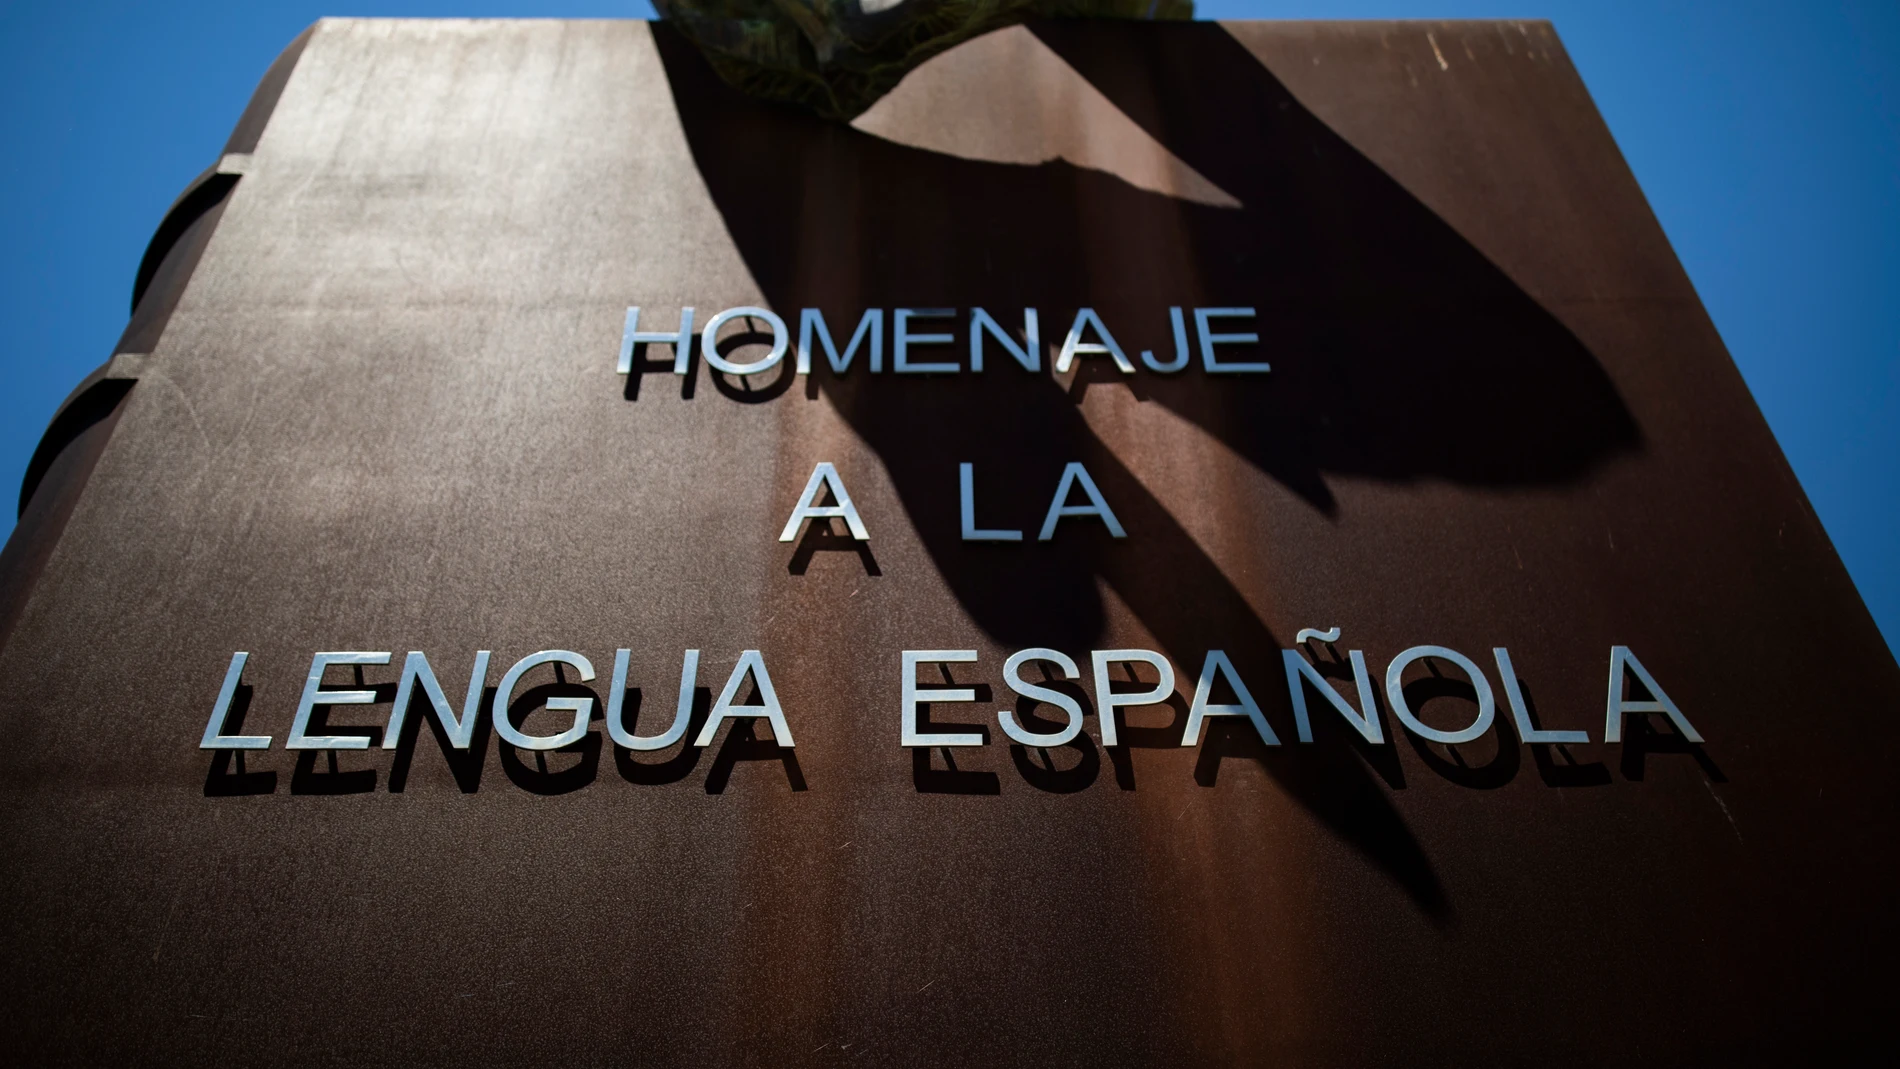 La defensa de la lengua española es una oportunidad para avanzar en la equidad